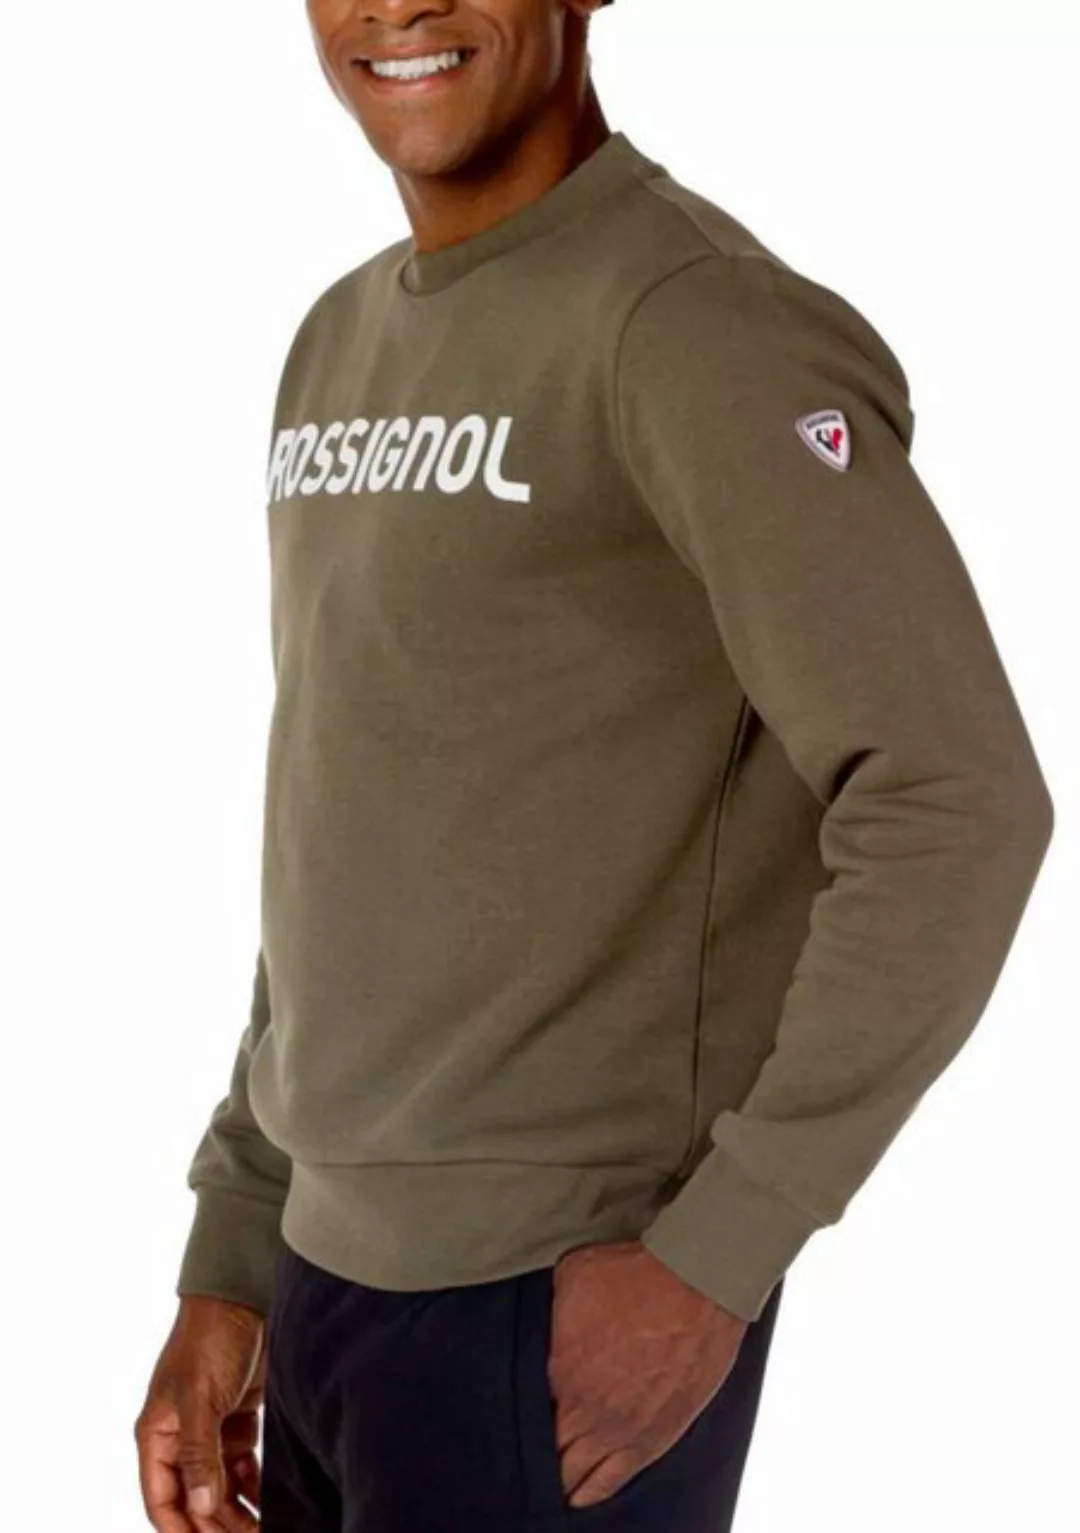 Rossignol Sweatshirt Sweatshirt Pullover Pulli Jumper Sport Logo Sweater günstig online kaufen